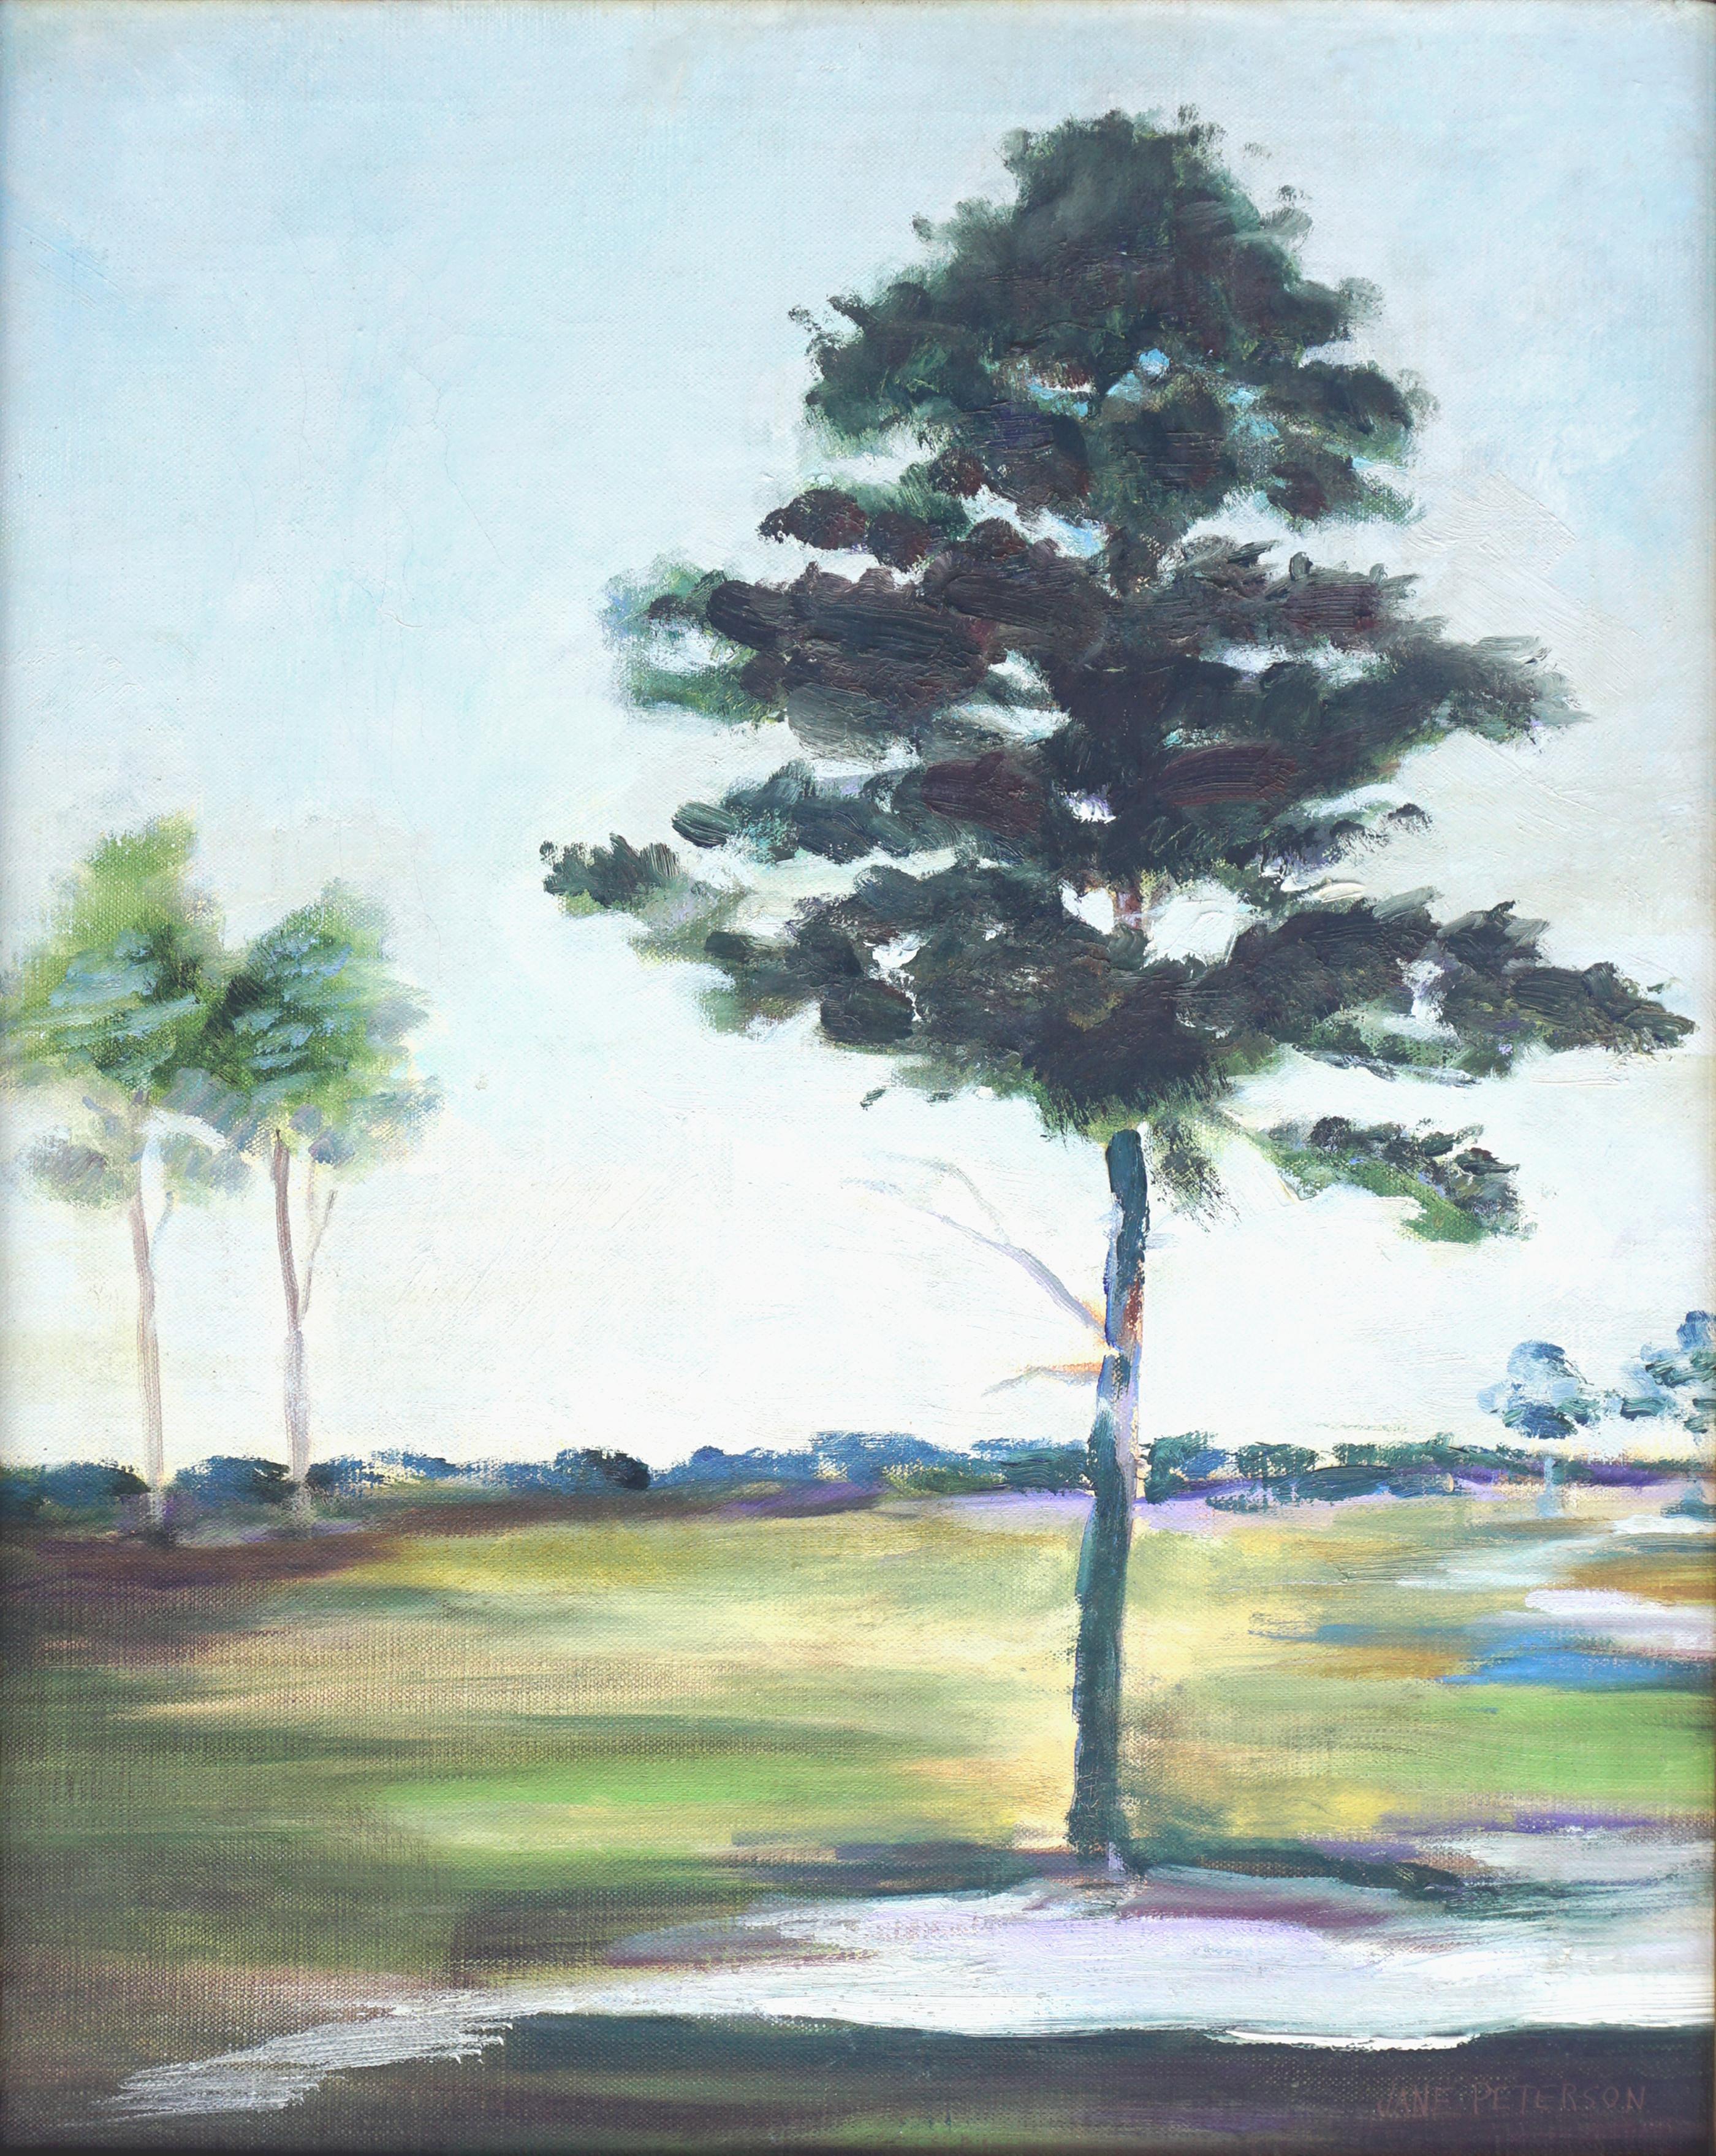 Landschaft des frühen 20. Jahrhunderts – Baum auf dem Grünen – Painting von Unknown